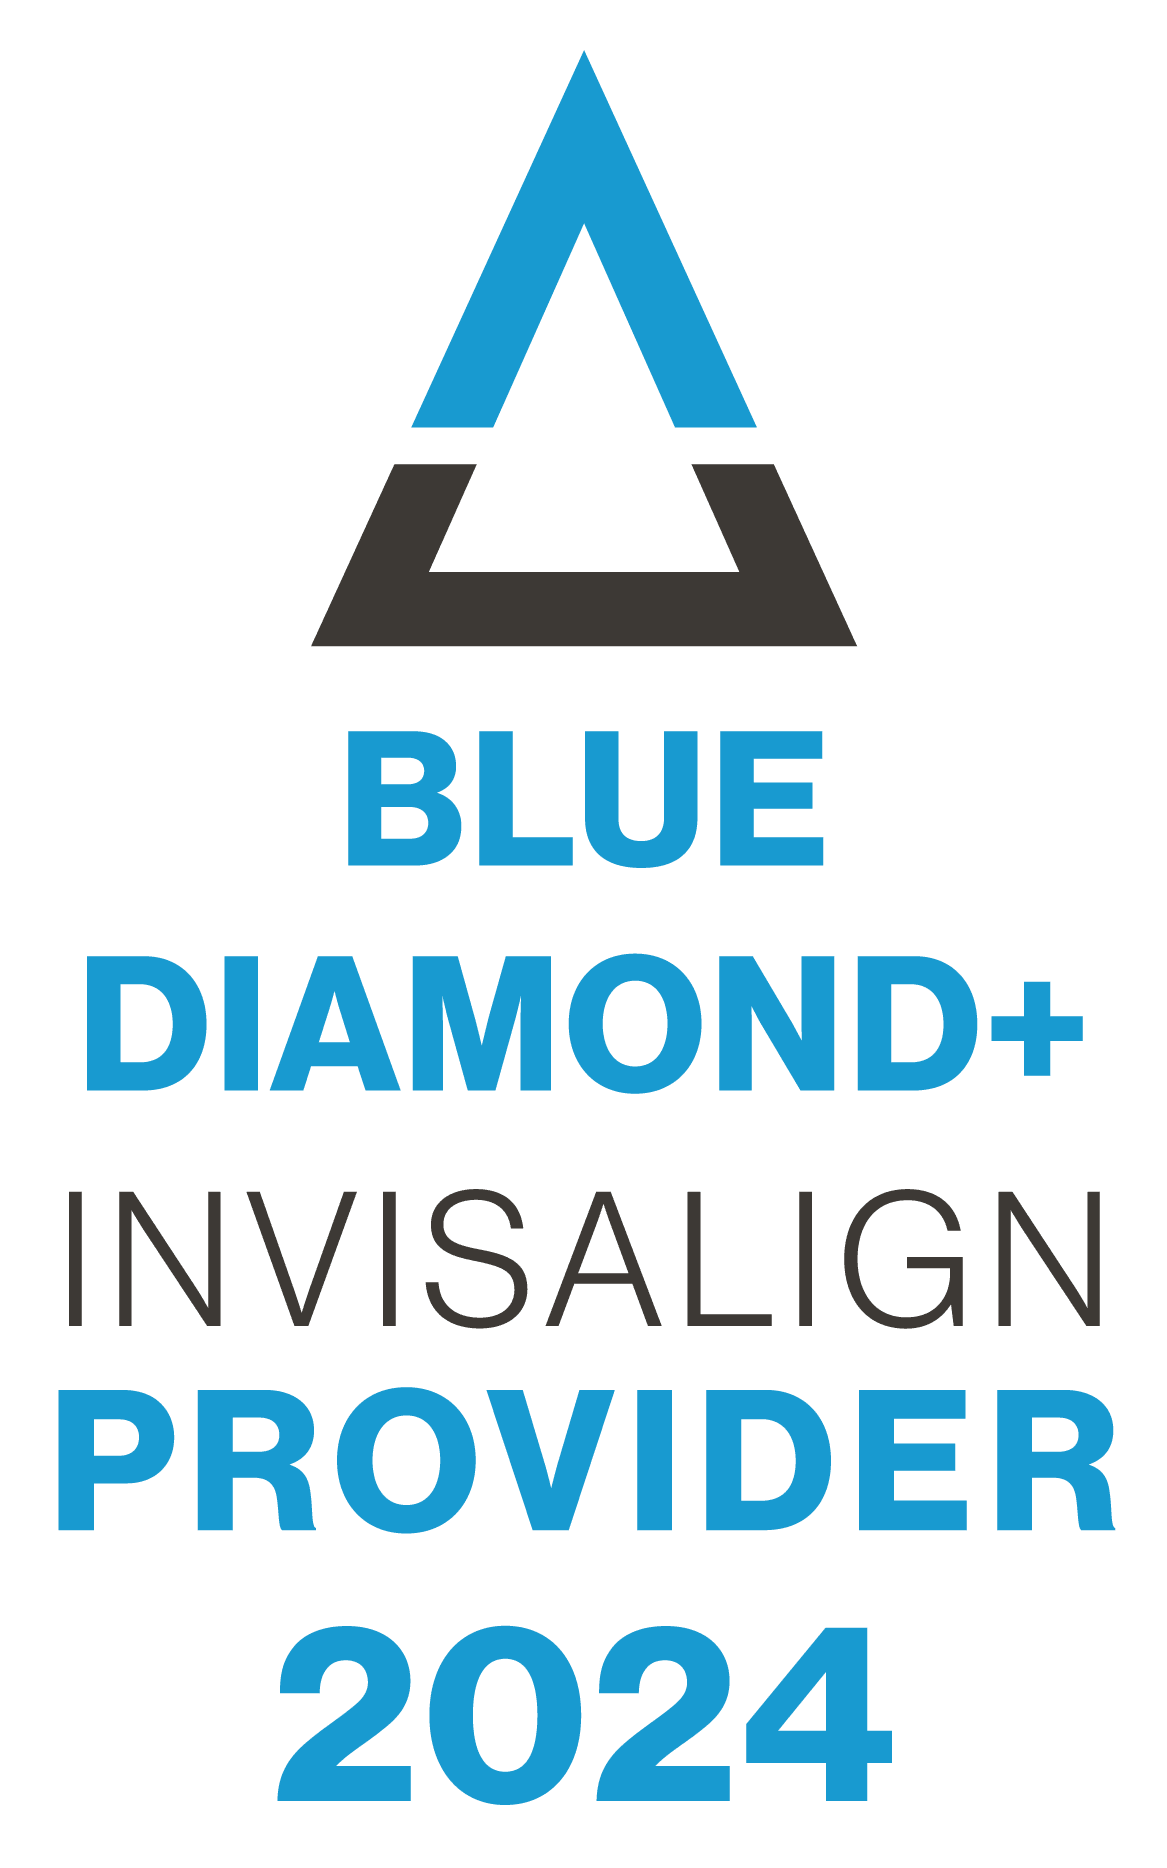 Blue Diamond+ Top 1% Invisalign Provider 2024